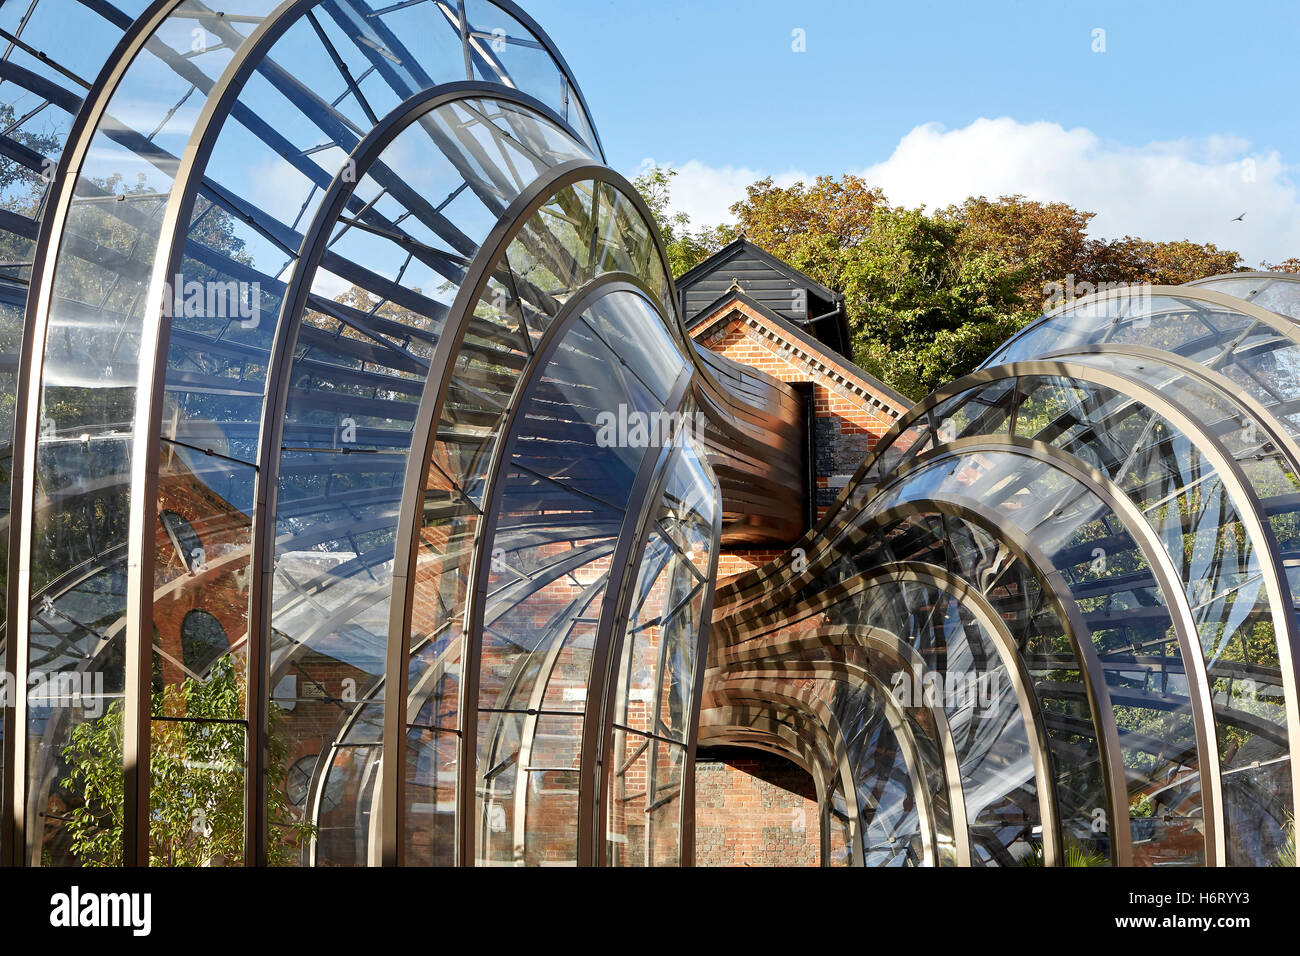 Respecto a los volúmenes de gases de efecto hall de la destilería. Bombay Sapphire, la Destilería Laverstoke, Reino Unido. Arquitecto: Heatherwick, 2014. Foto de stock